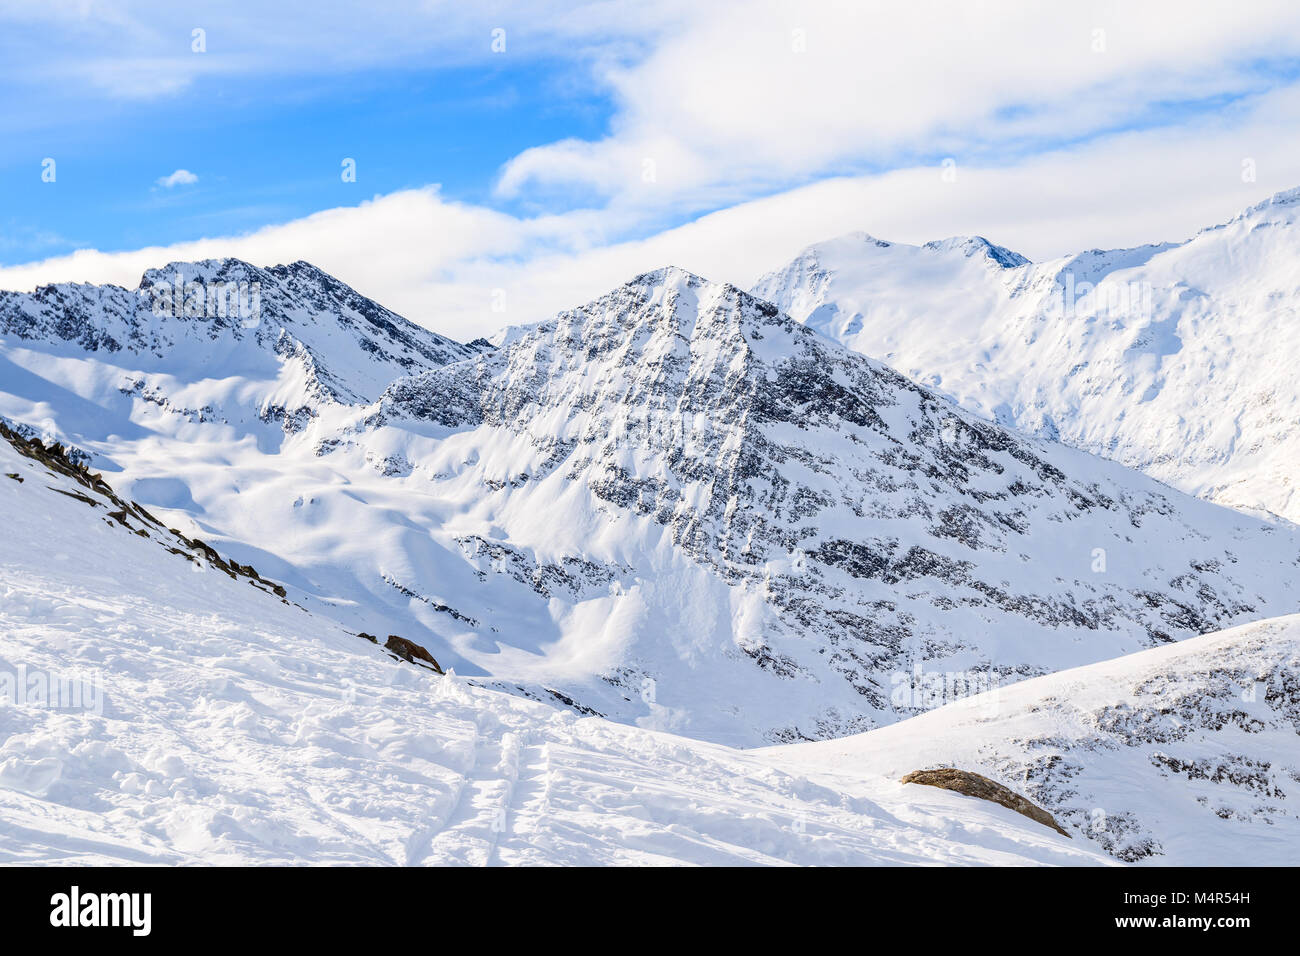 Voir de belles montagnes couvertes de neige fraîche pendant la saison d'hiver, domaine skiable Obergurgl-Hochgurgl, Autriche Banque D'Images